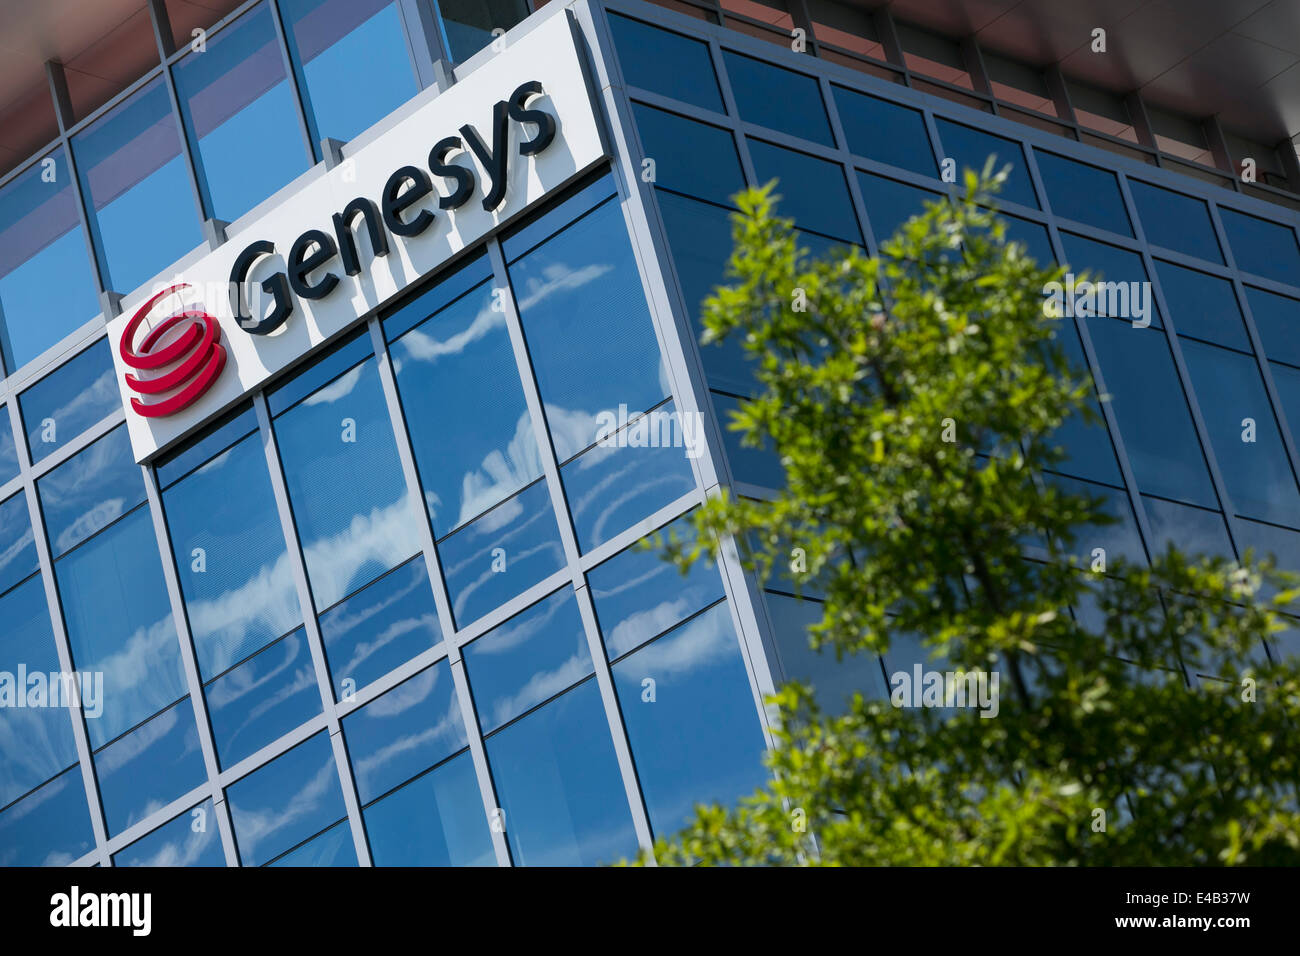 Un edificio di uffici occupati dalla tecnologia delle telecomunicazioni azienda Genesys. Foto Stock